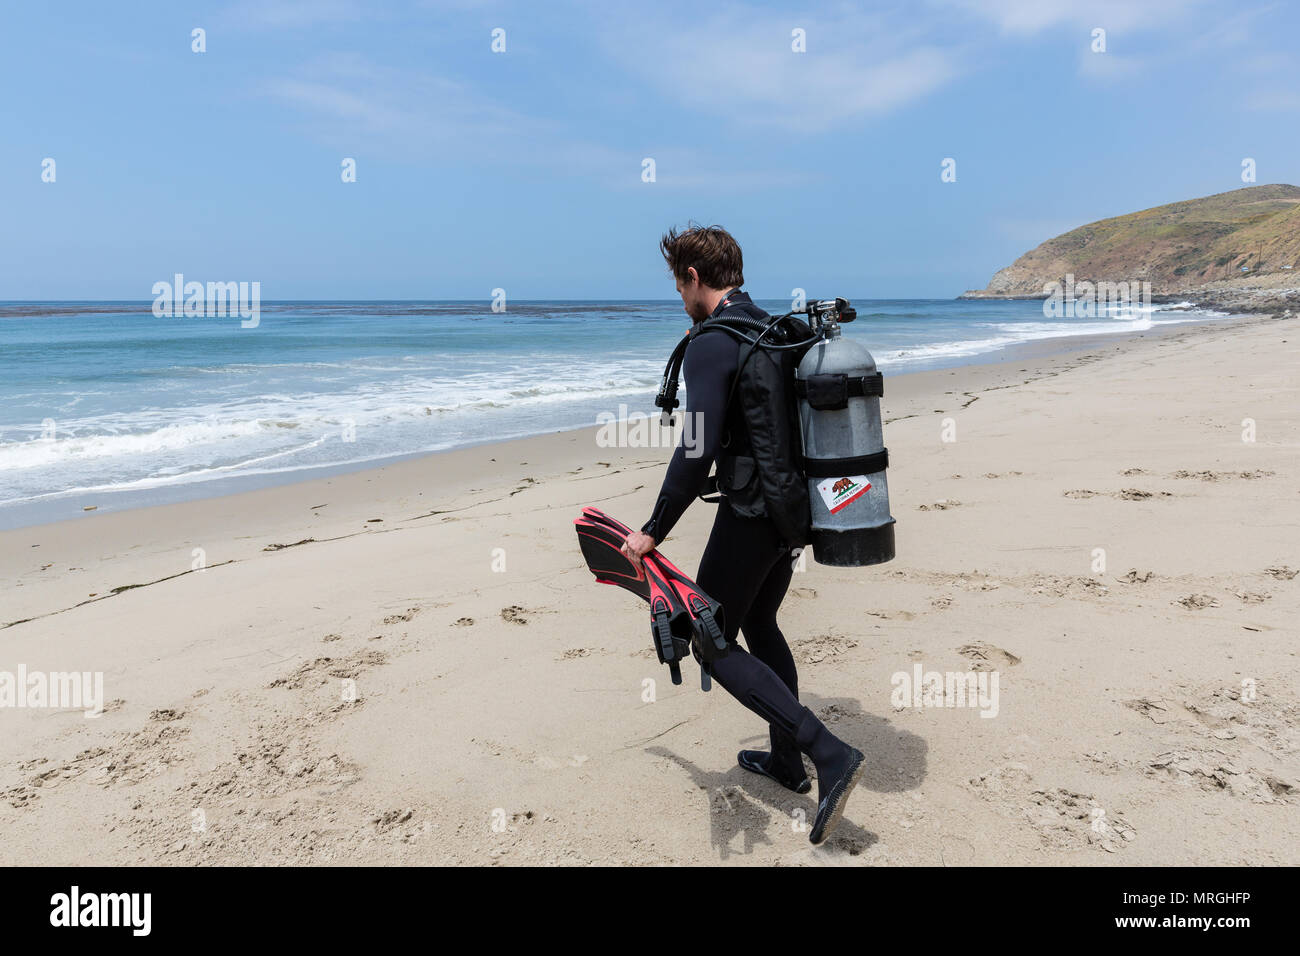 Un plongeur se dirige vers l'océan, prêt pour une plage plongée (plongée du rivage) lors d'une journée ensoleillée à Malibu, en Californie. Banque D'Images